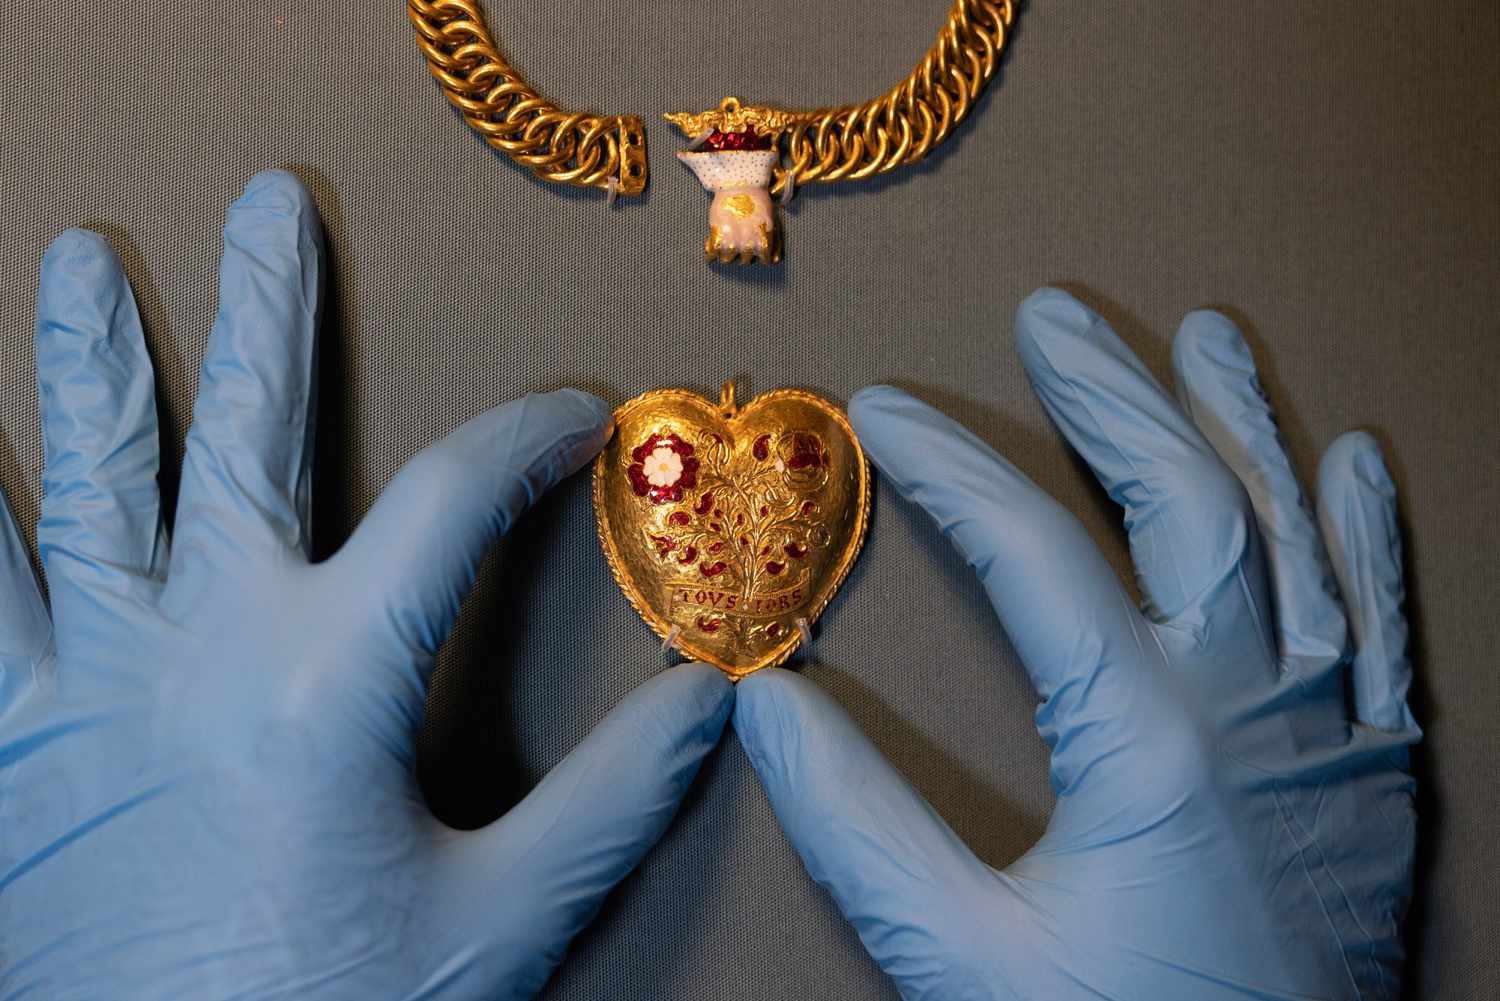 Właściciel kawiarni odkrywa wisiorek w kształcie serca powiązany z królem Henrykiem VIII w terenie: „Znalezisko raz na pokolenie”